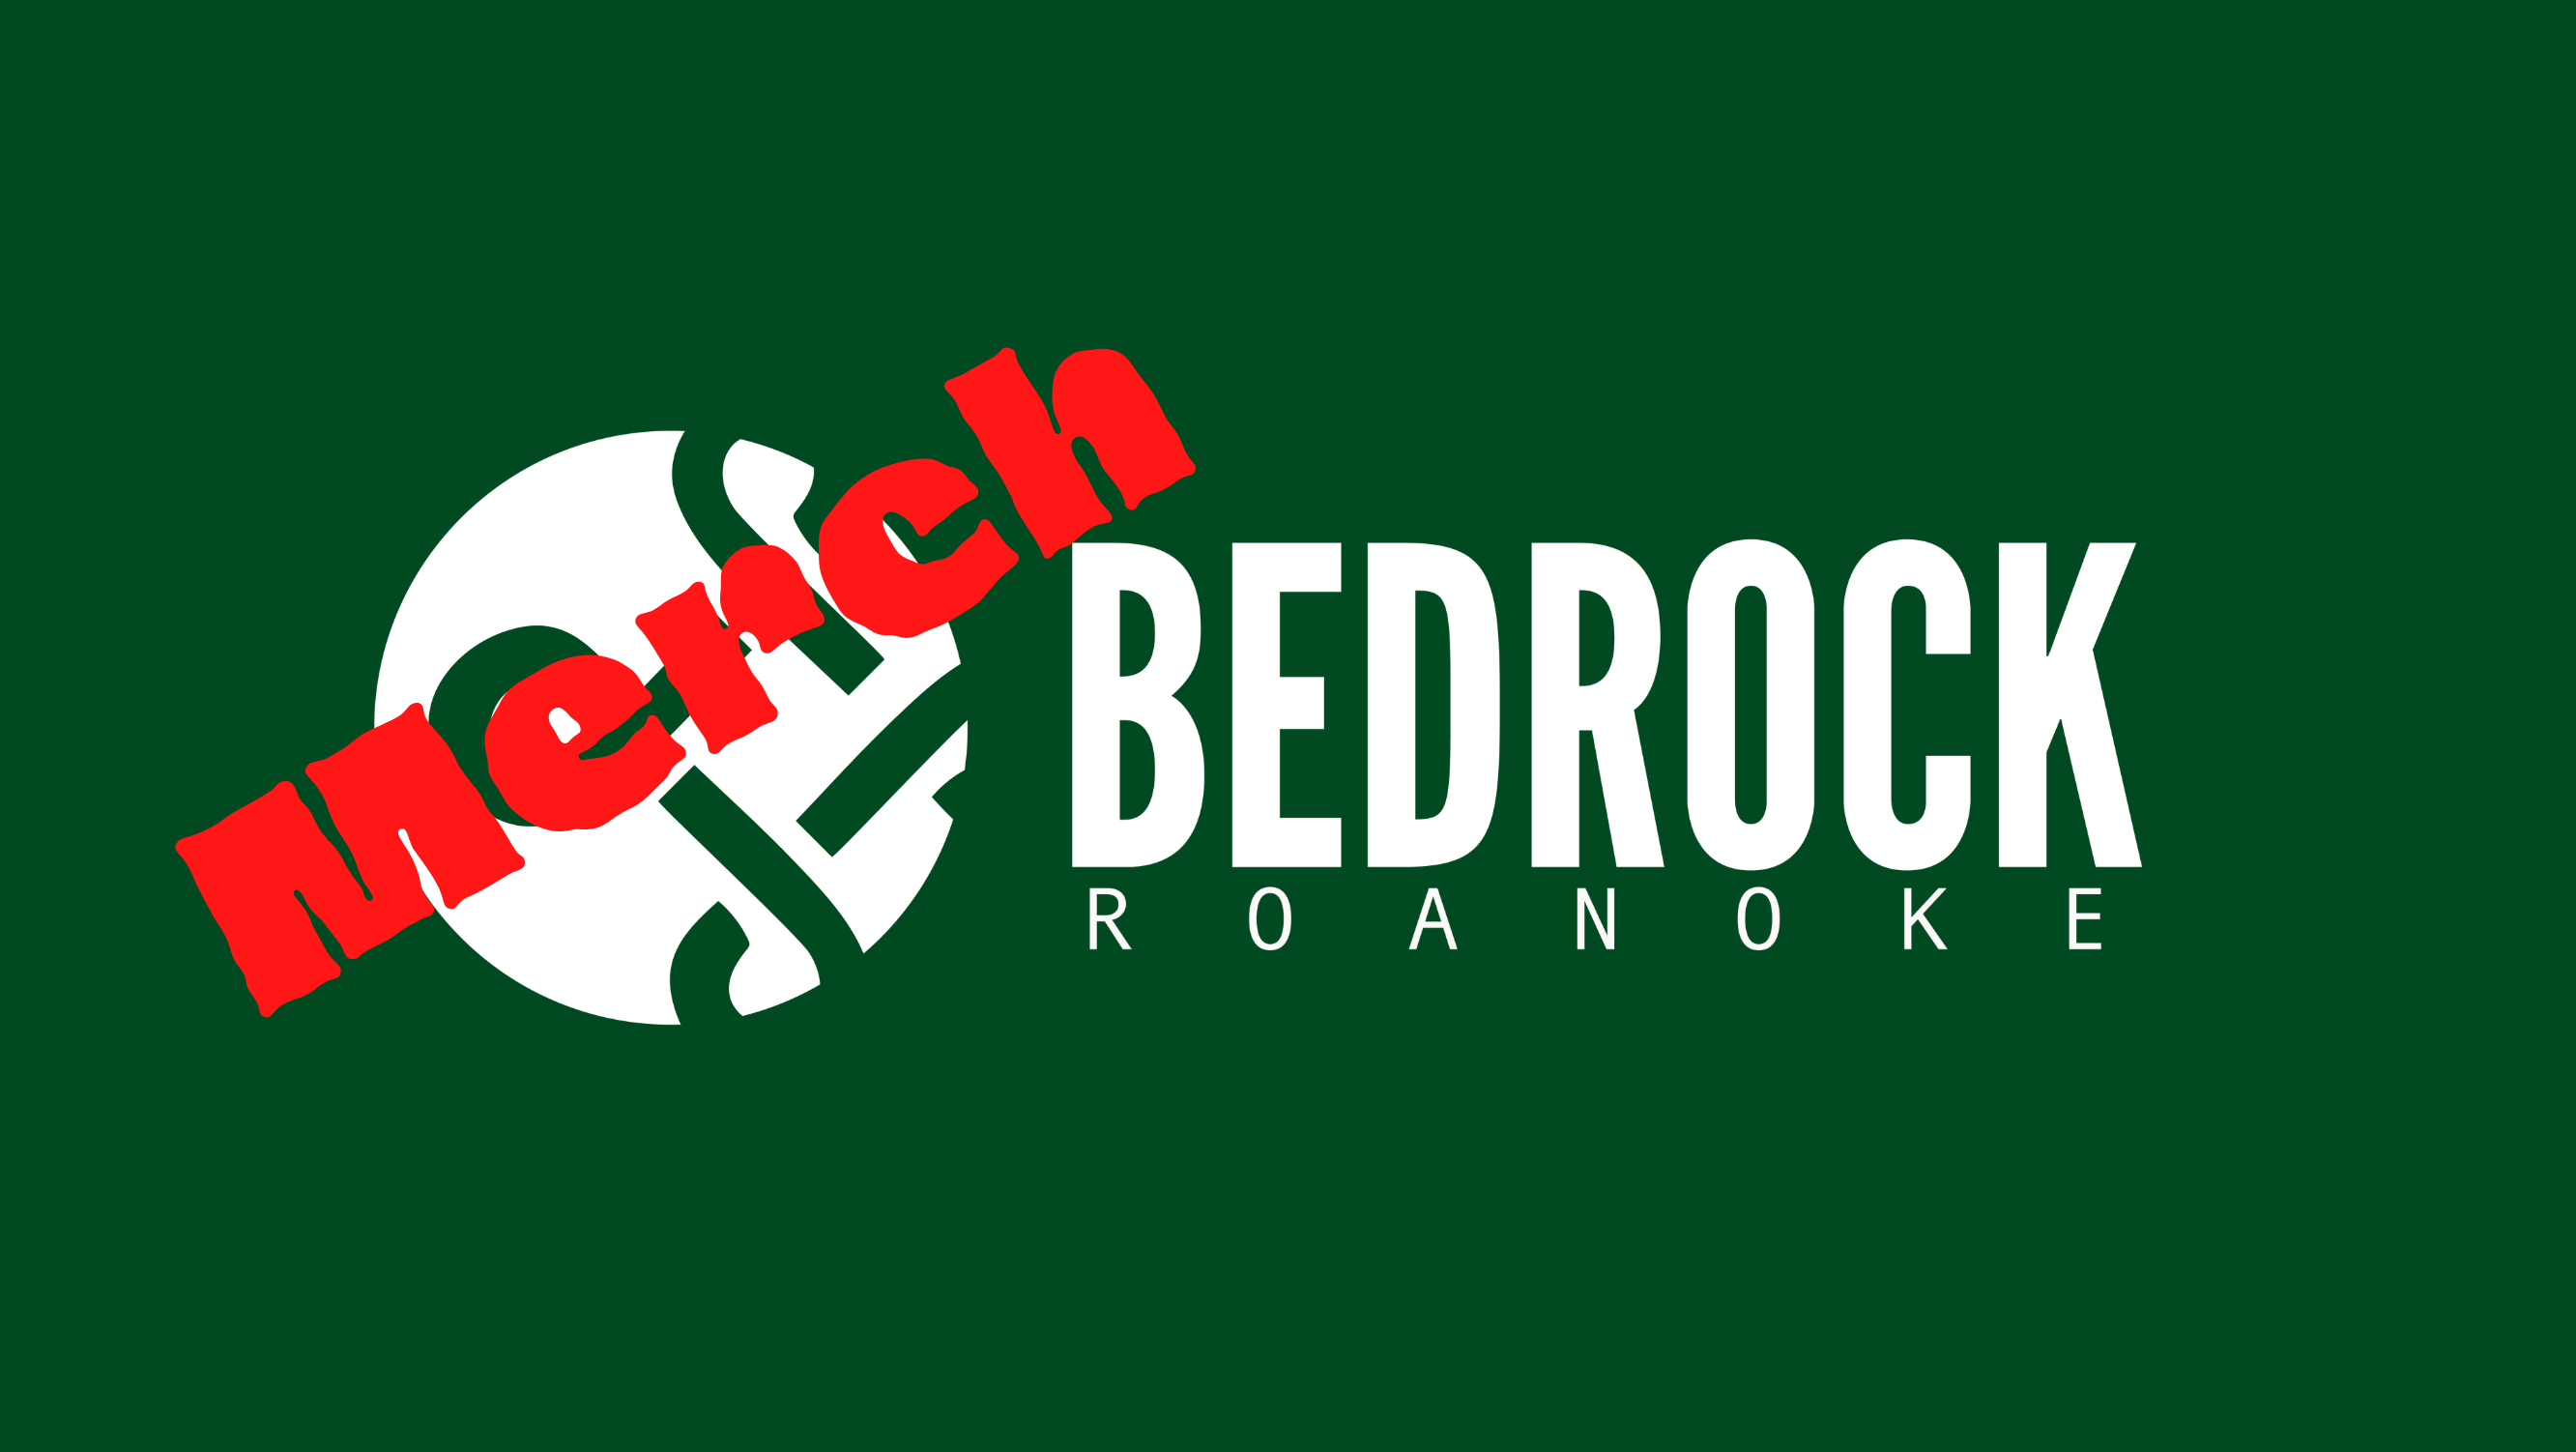 Bedrock Church Roanoke Merch